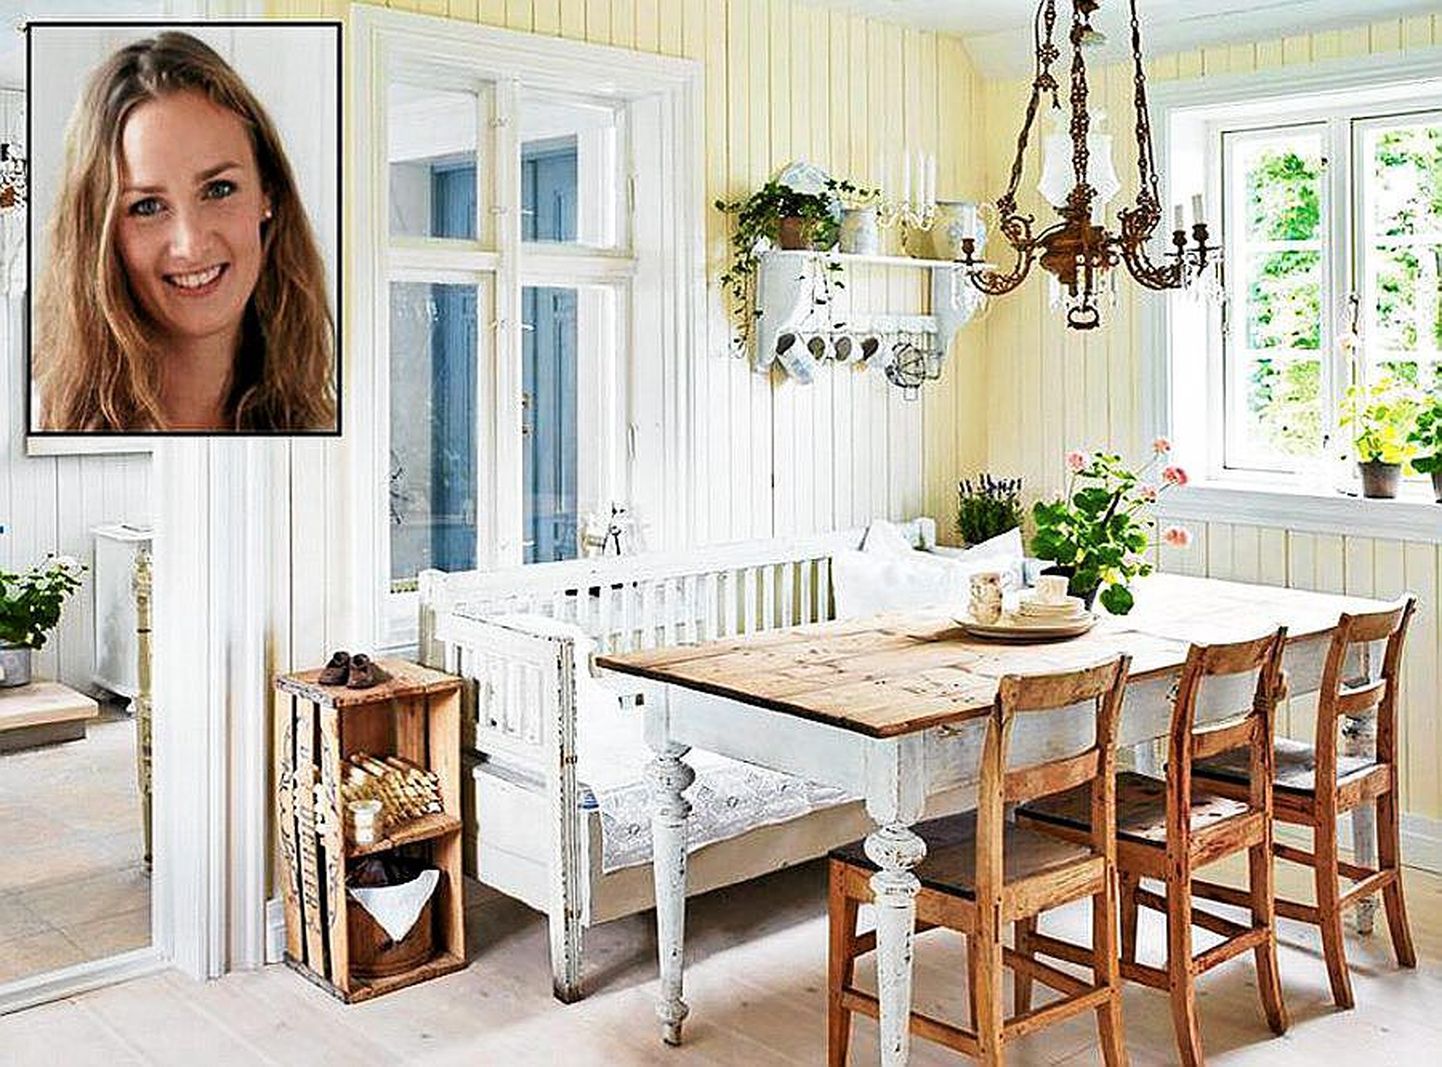 Norra kauneimaks koduks krooniti tänavu 29-aastase perenaise Helene Helgeseni ajaloohõnguline eluase.